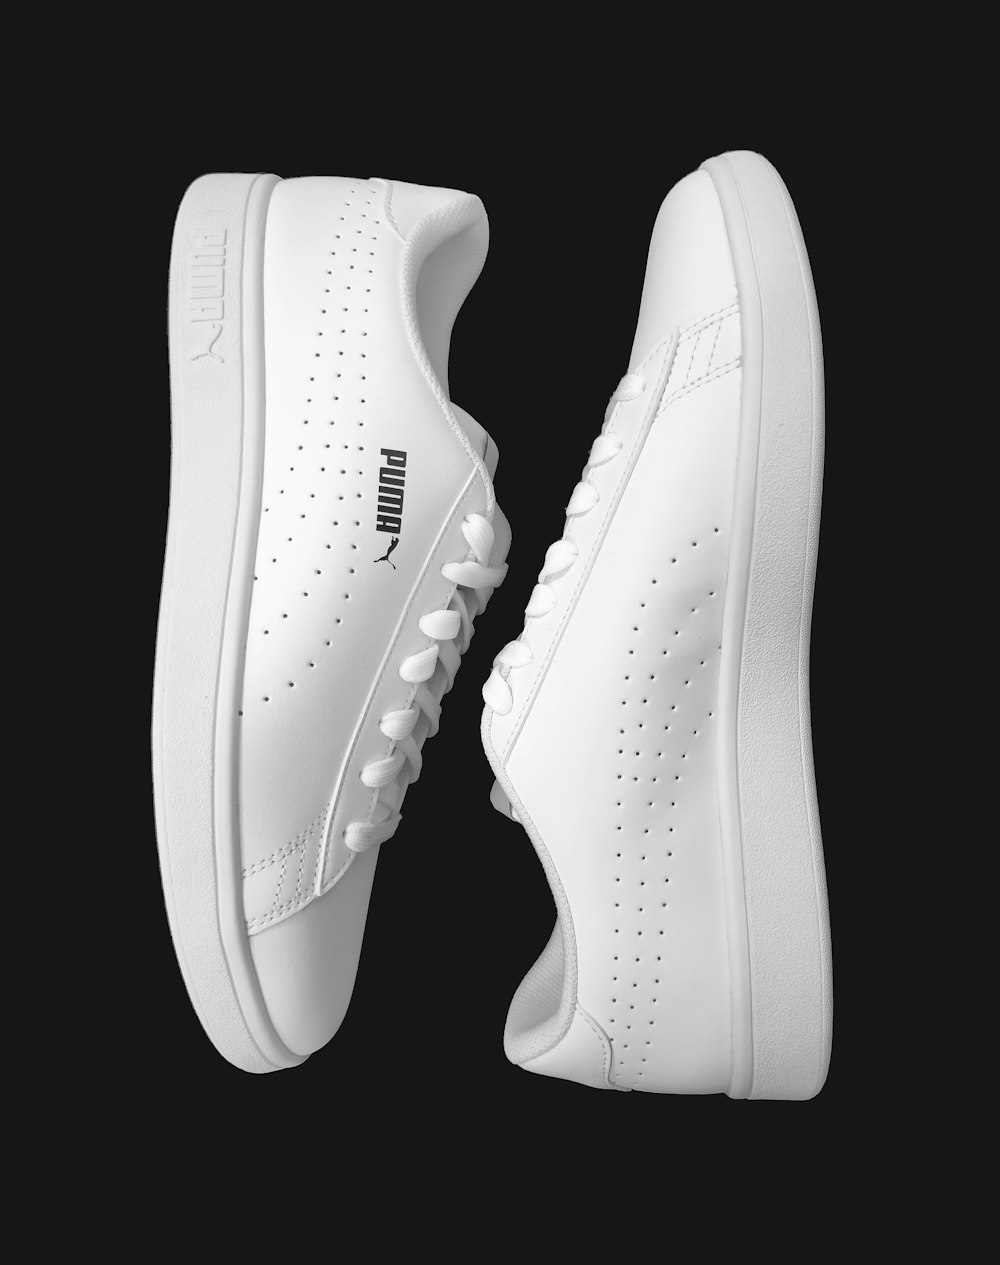 Zapatillas deportivas Nike blancas sobre fondo blanco